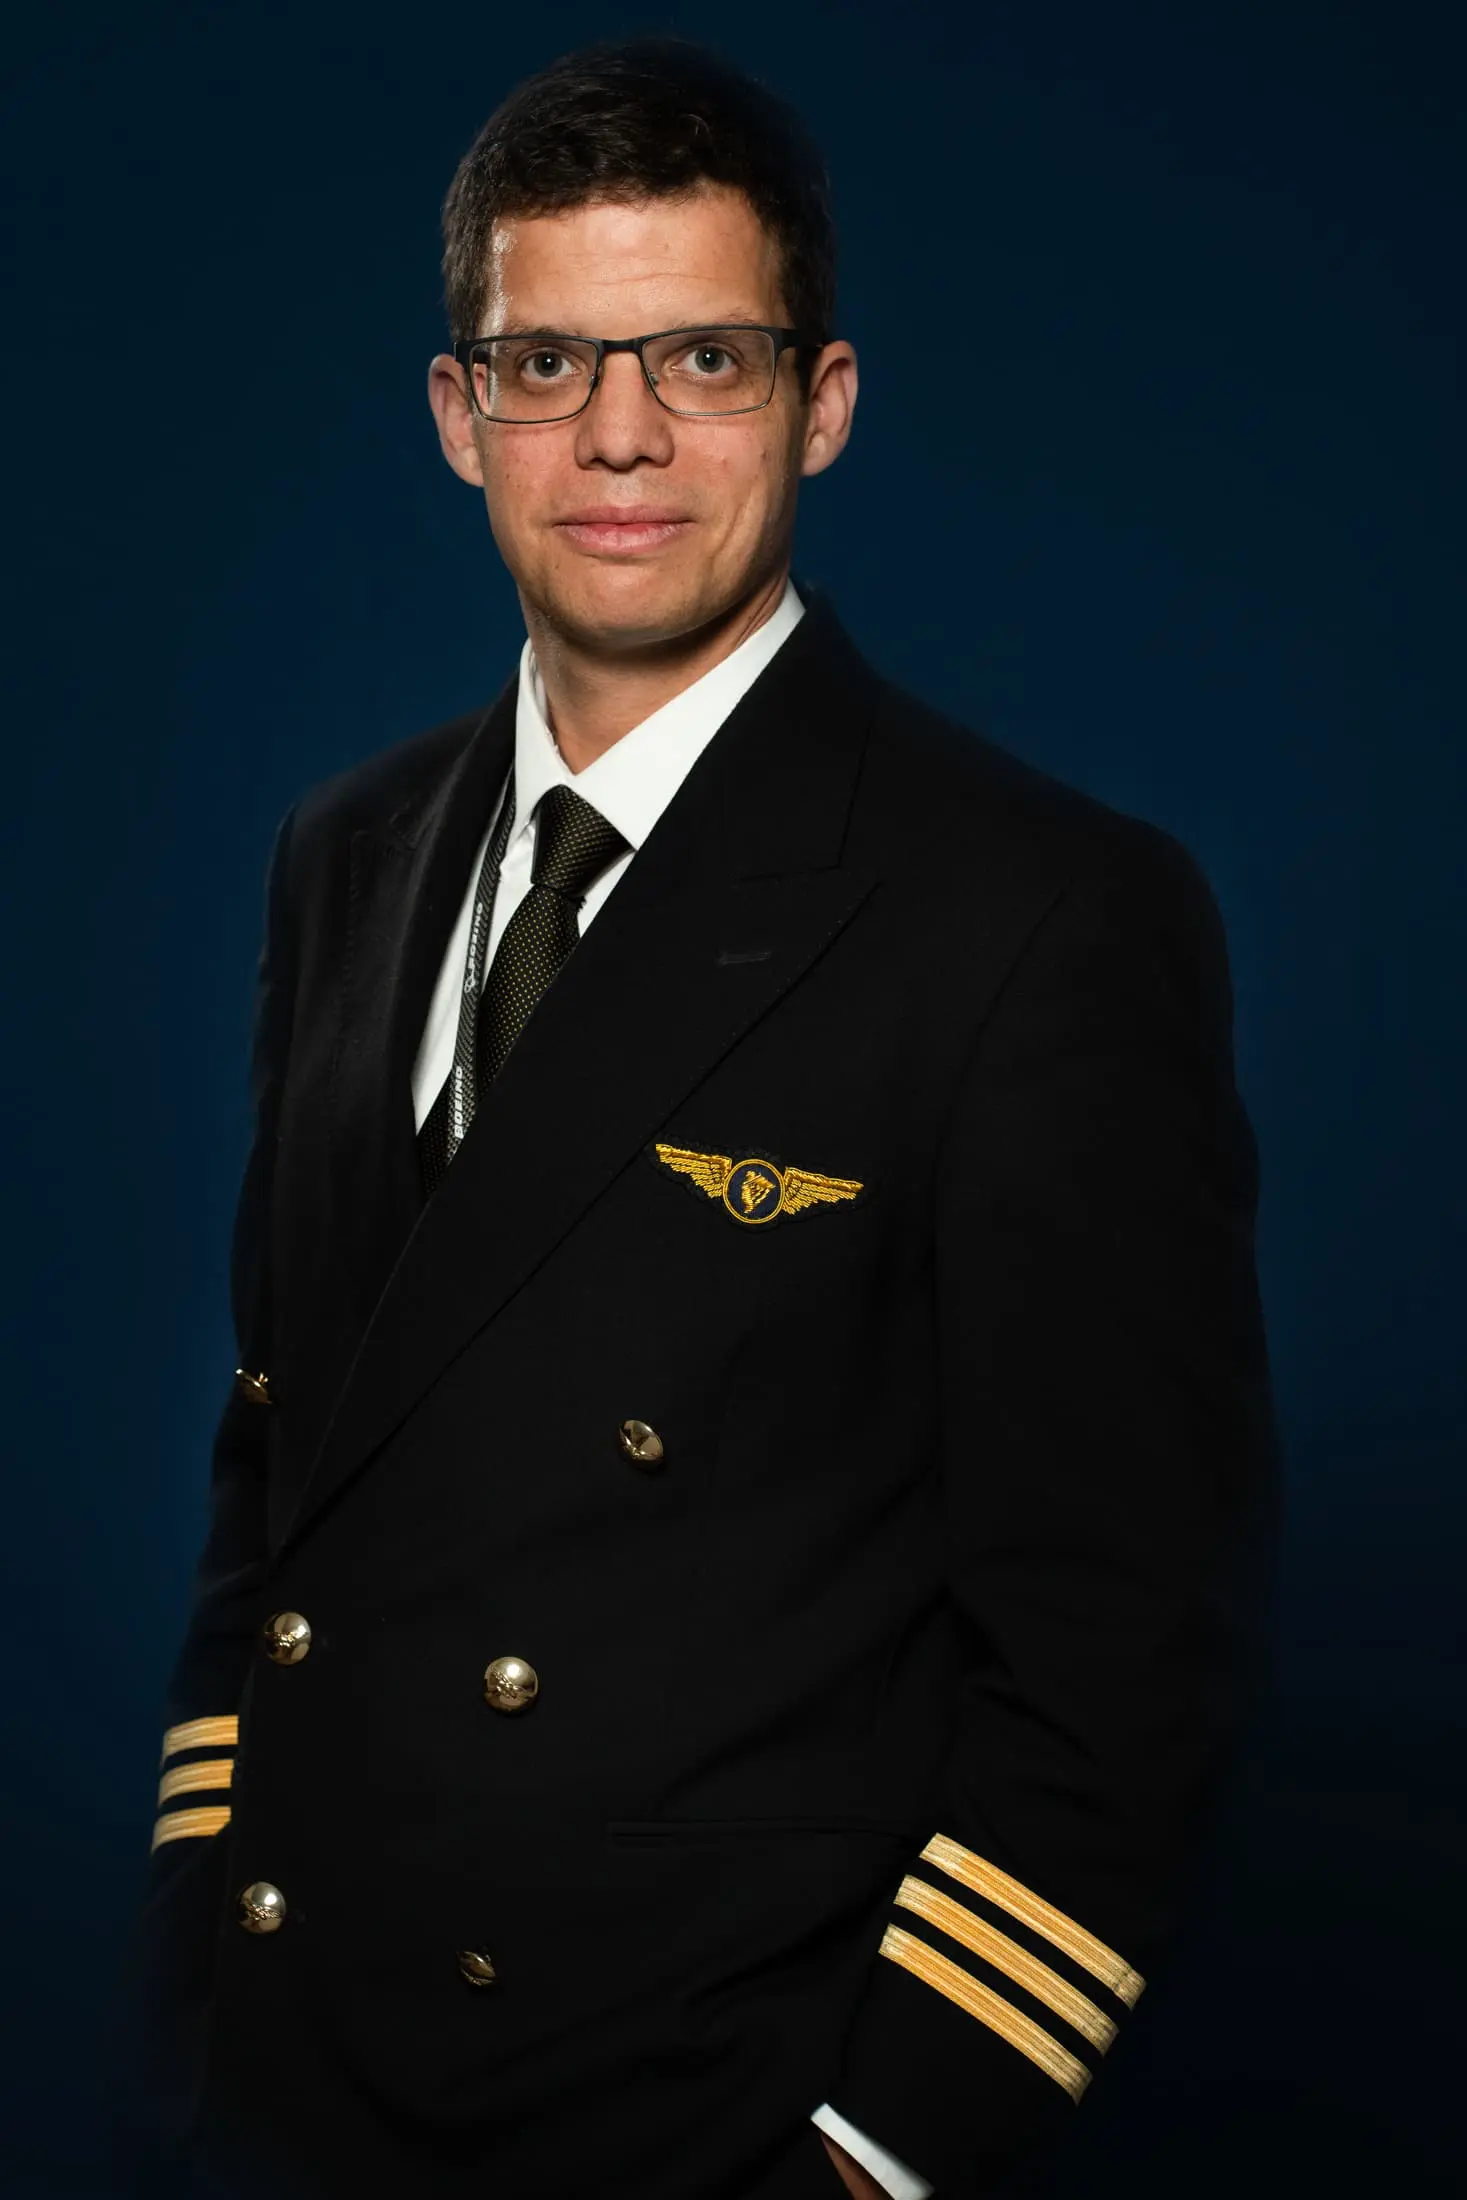 Portrait d'u pilote d'avion en uniforme sur fond bleu